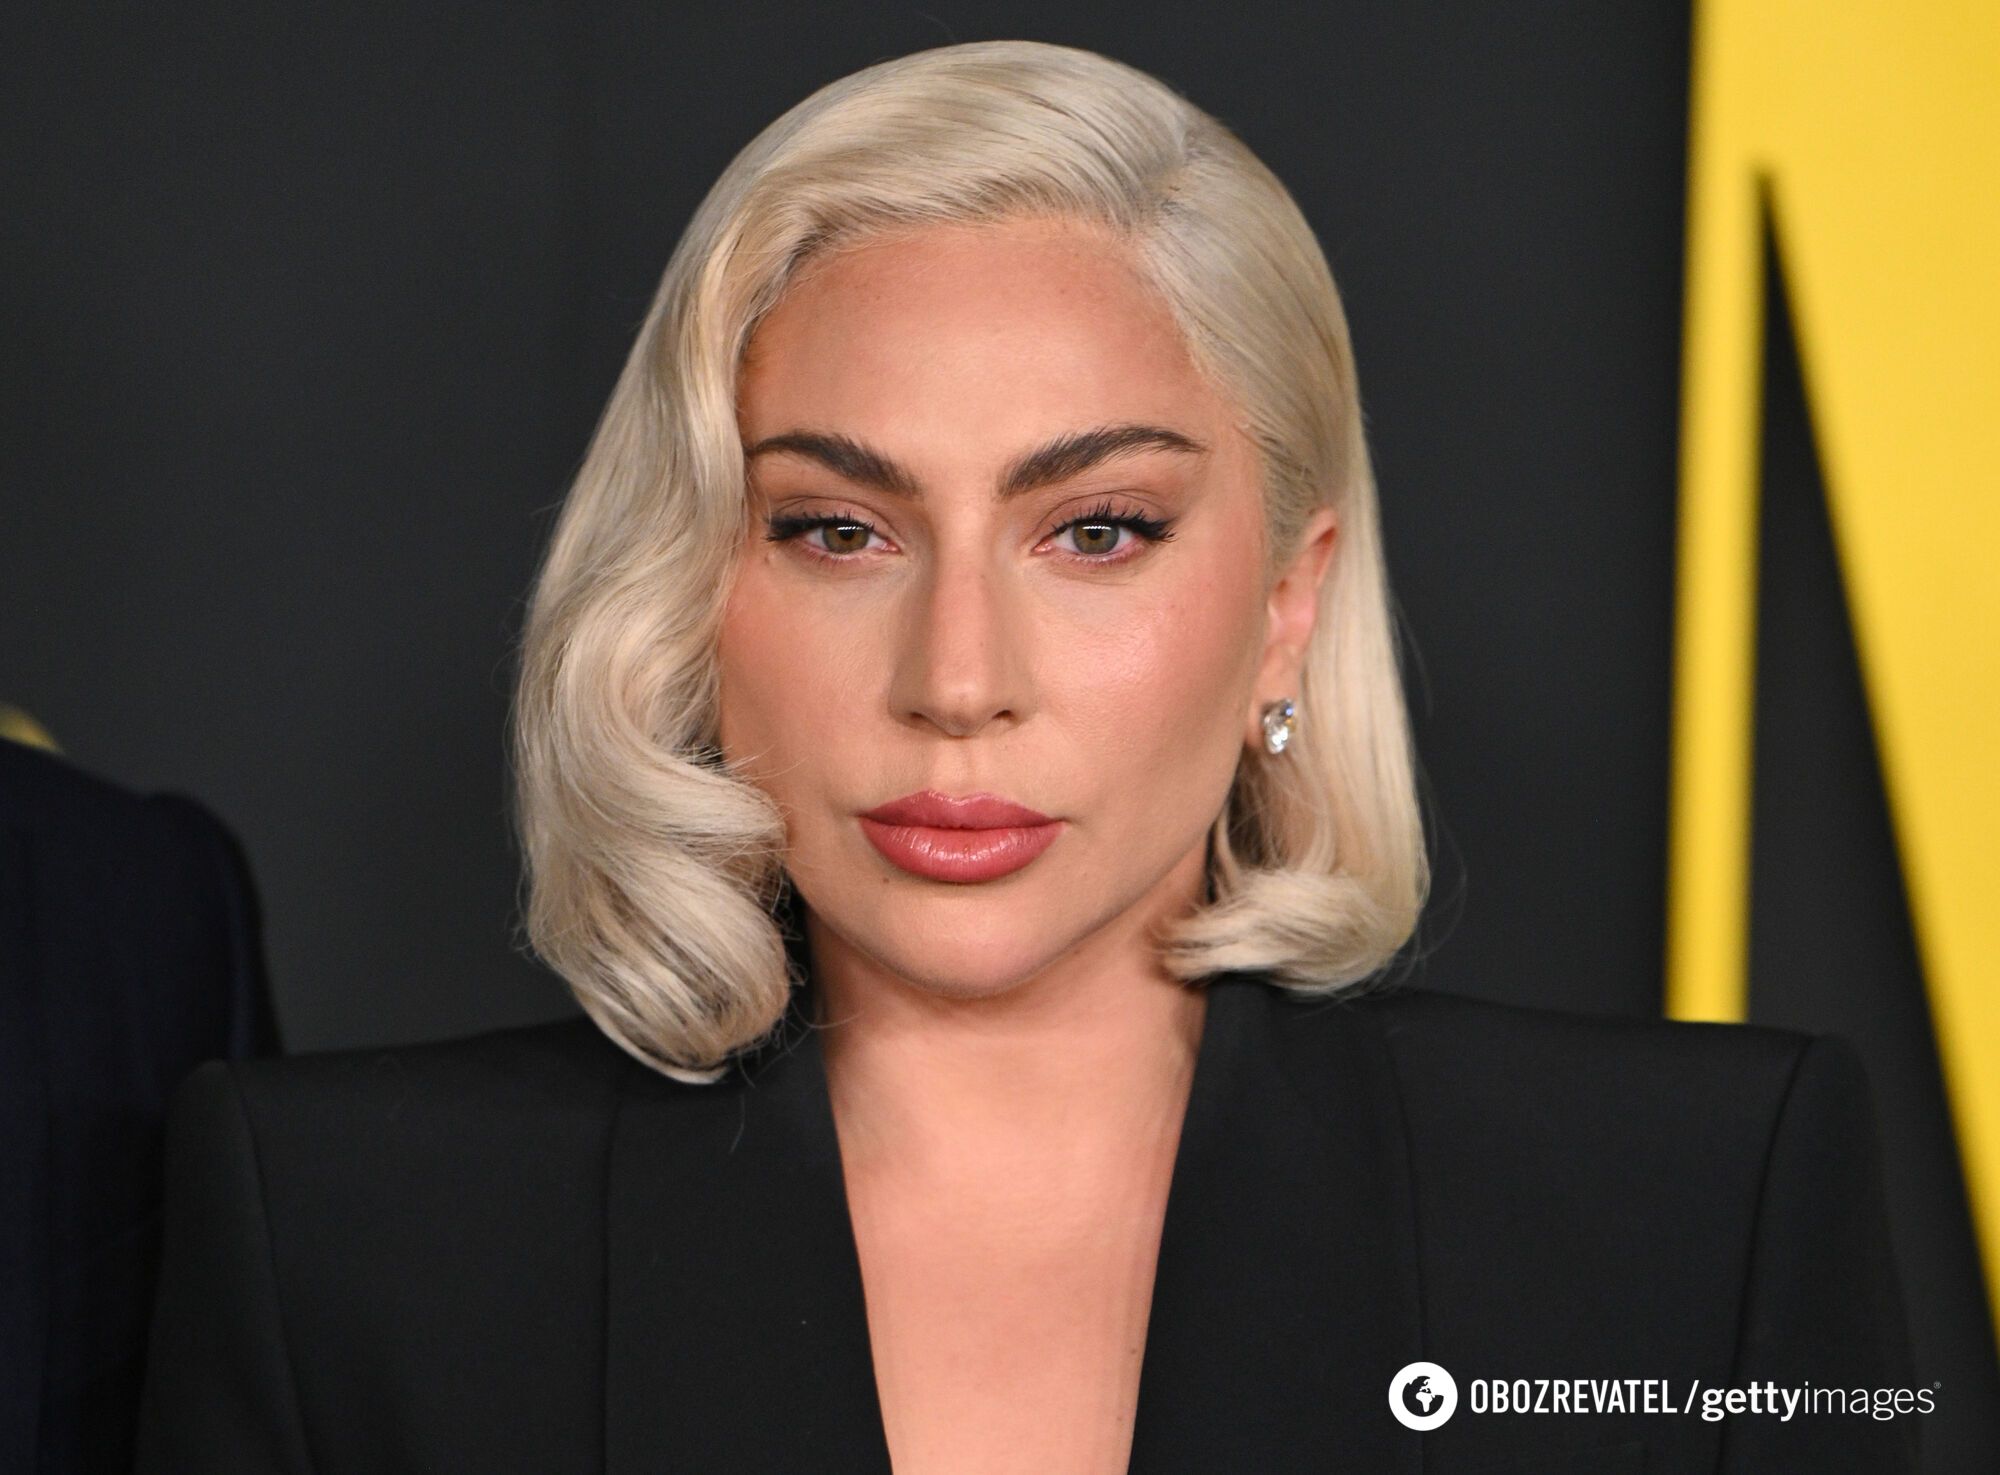 37-letnia Lady Gaga rozczarowała fanów botoksem i wypełniaczami na twarzy. Zdjęcia przed i po